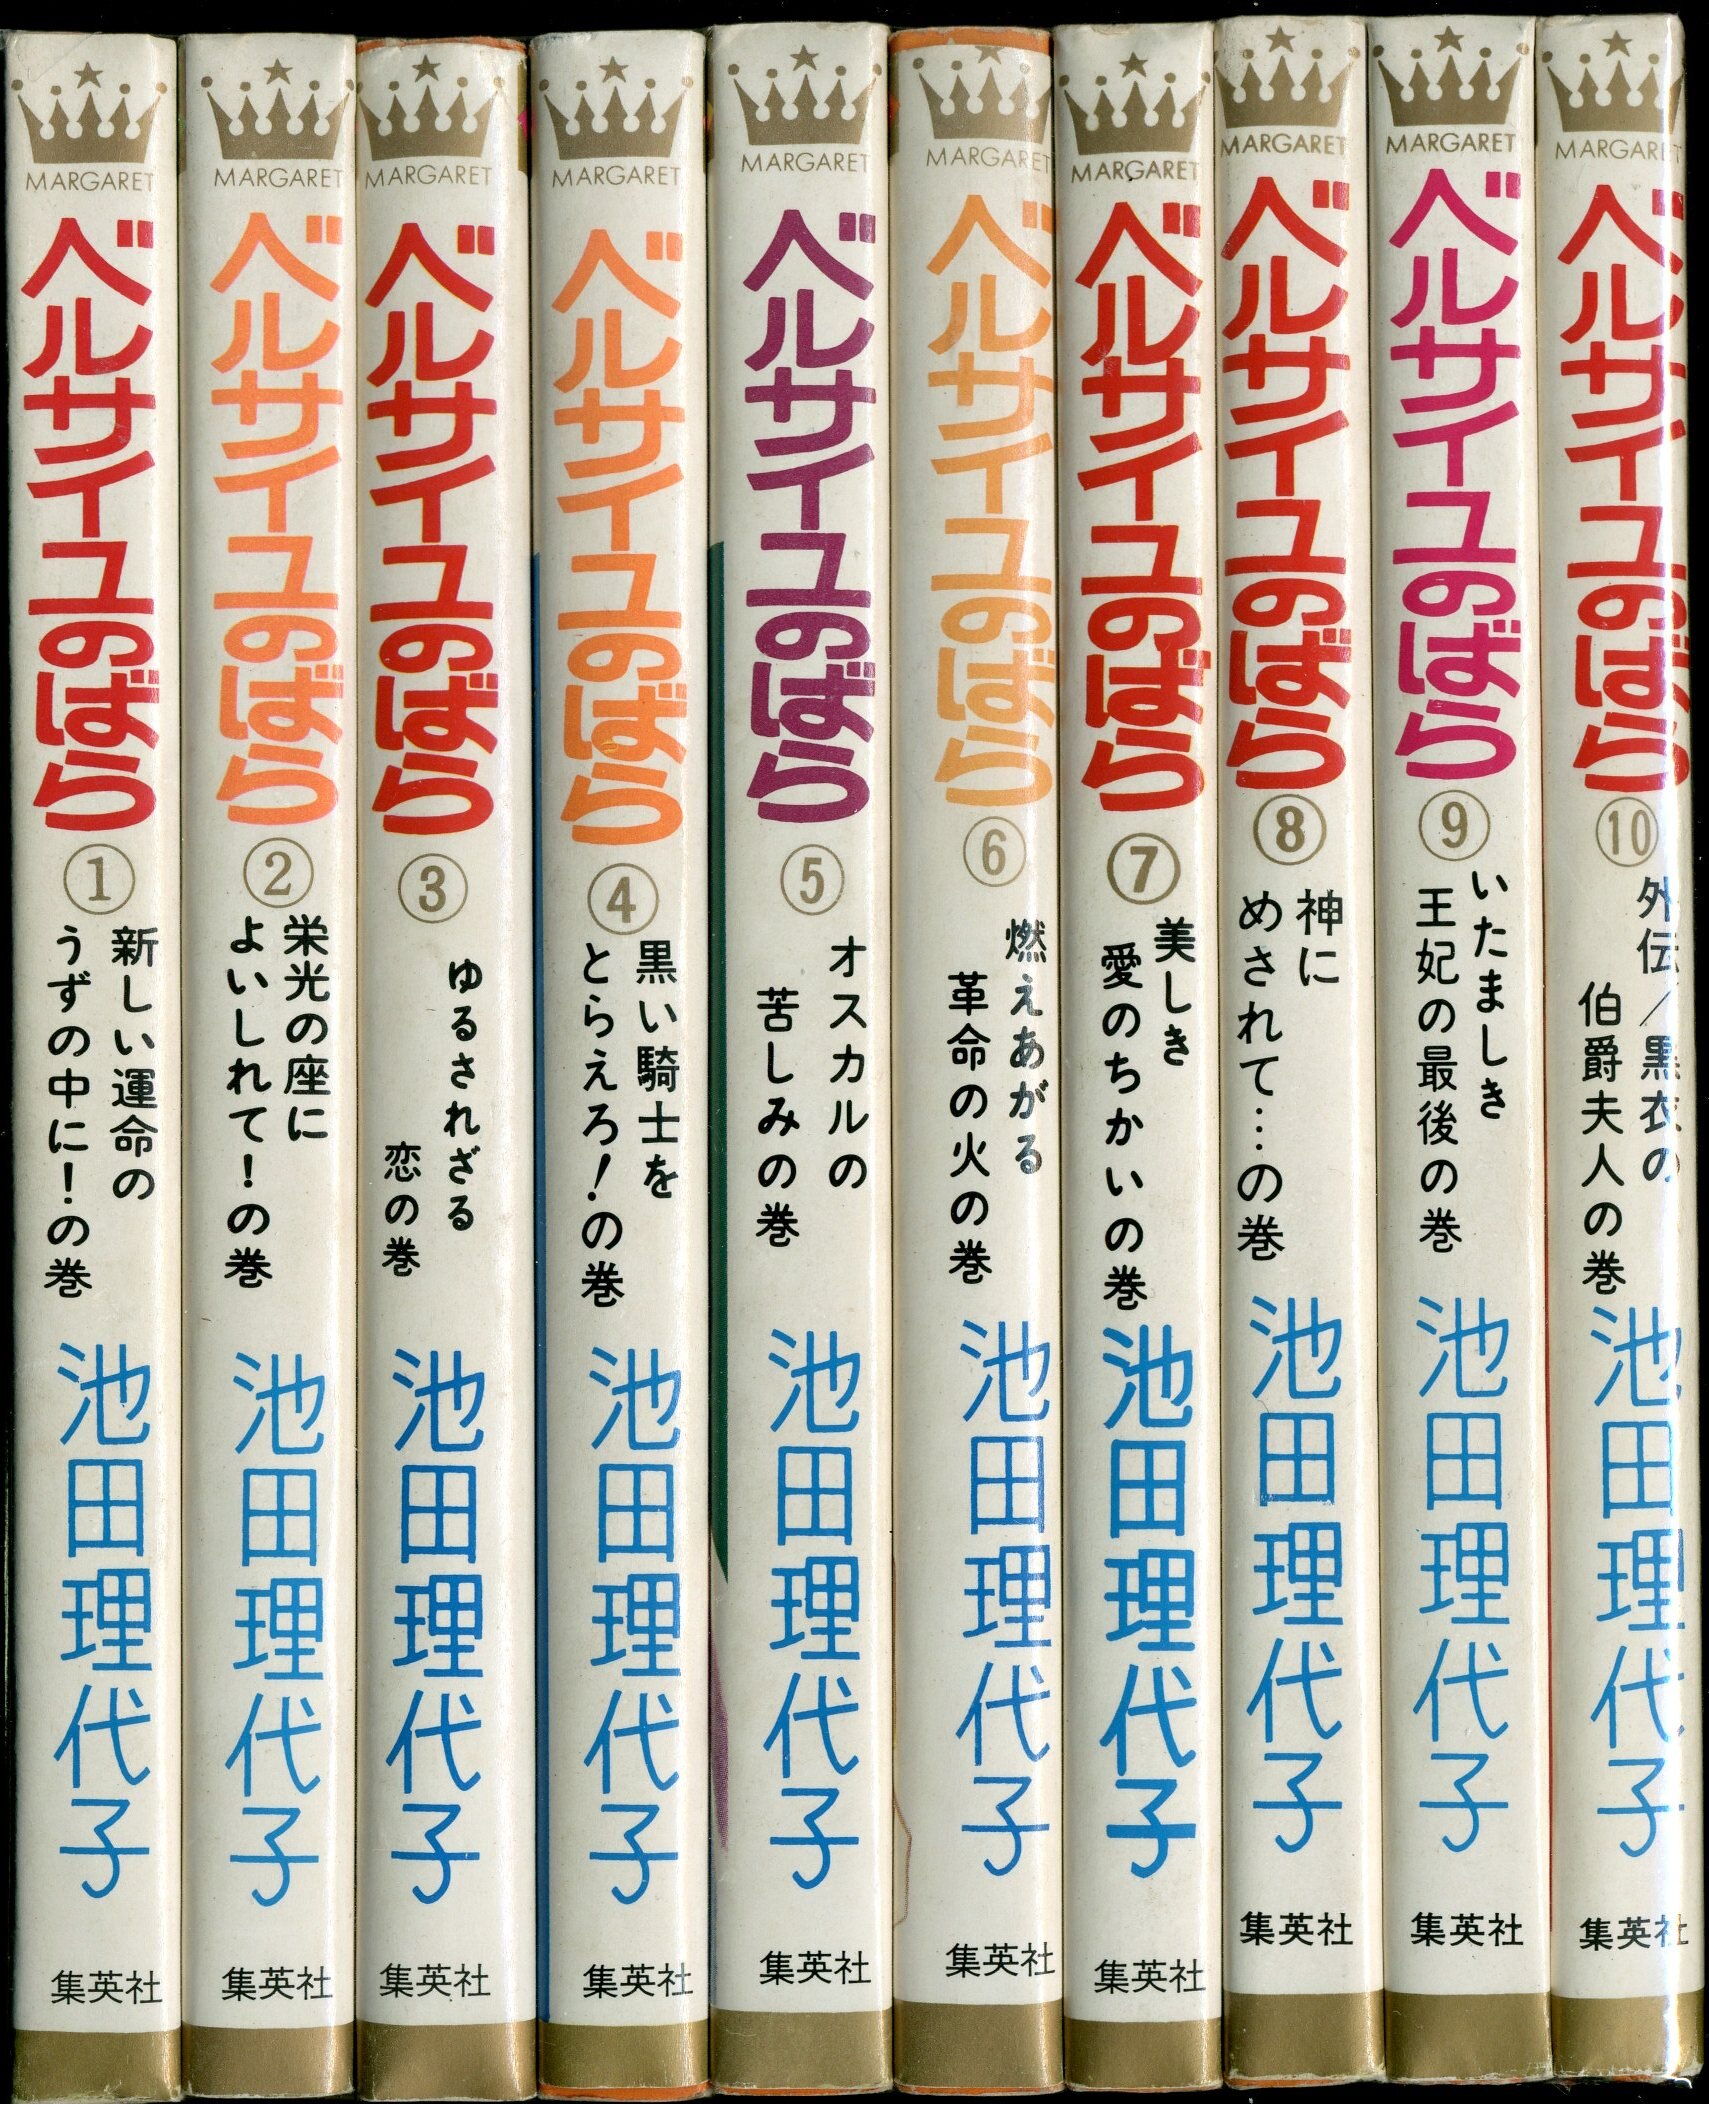 集英社 マーガレットコミックス 池田理代子 ベルサイユのばら 全10巻